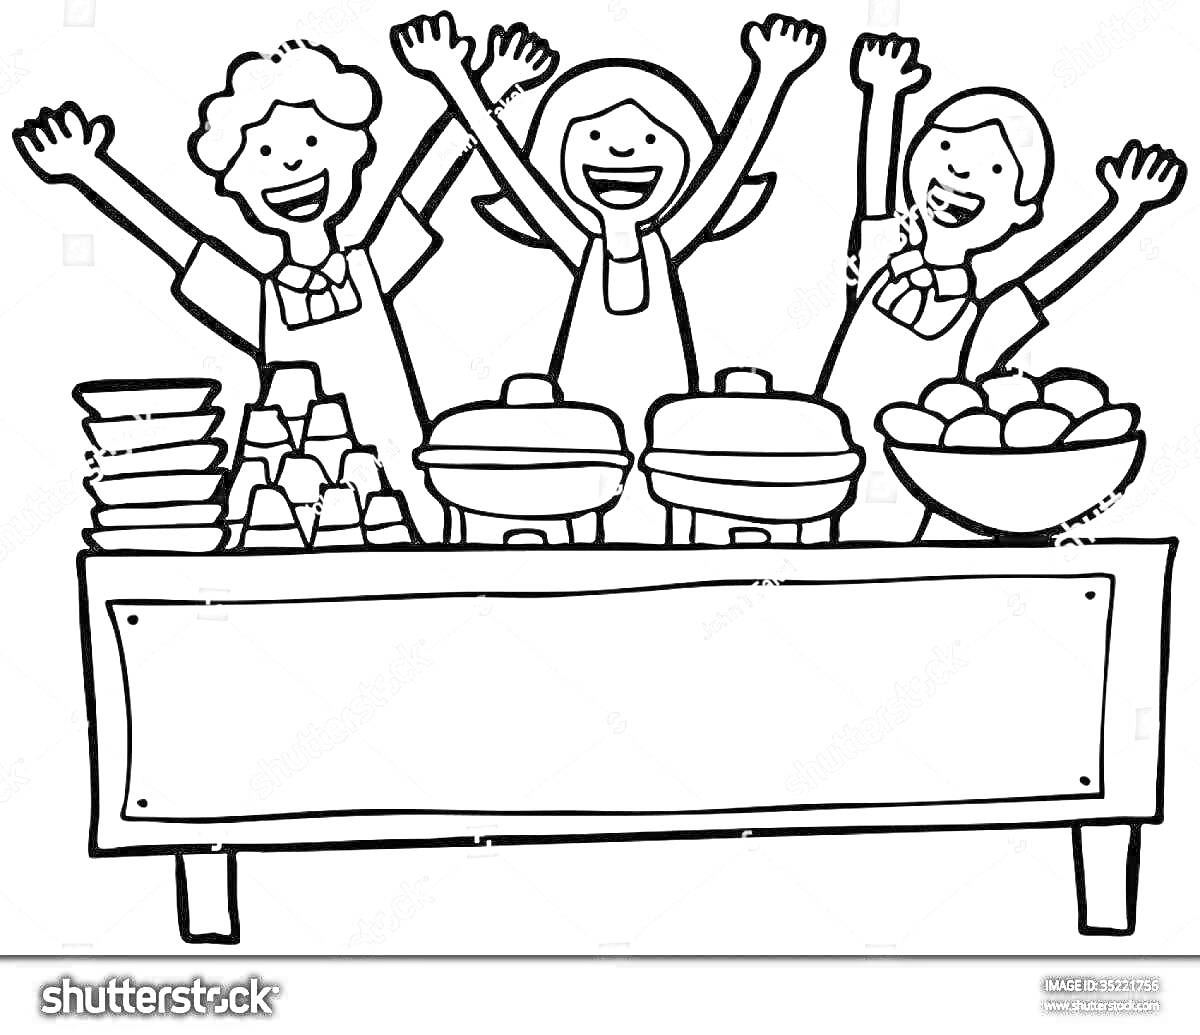 Раскраска Люди за буфетным столом с тарелками, контейнерами для еды и миской с фруктами